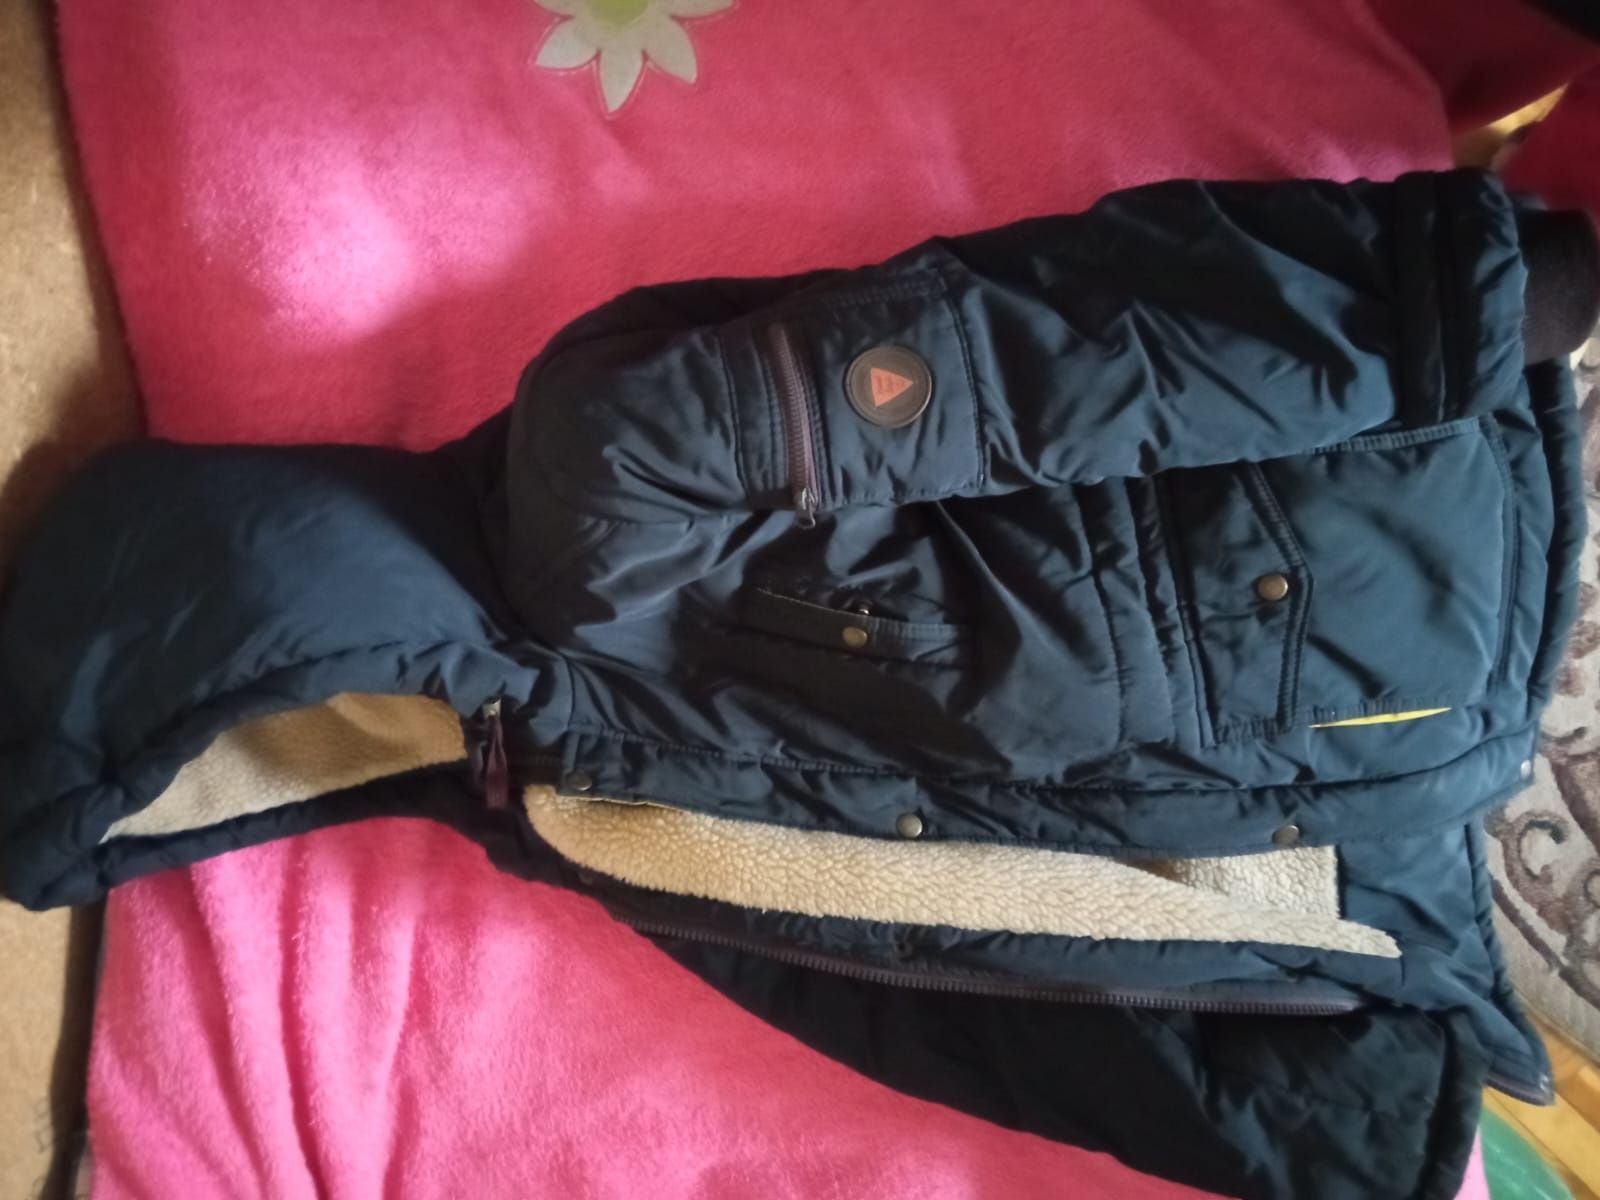 Зимняя куртка пуховик для мальчика р.42